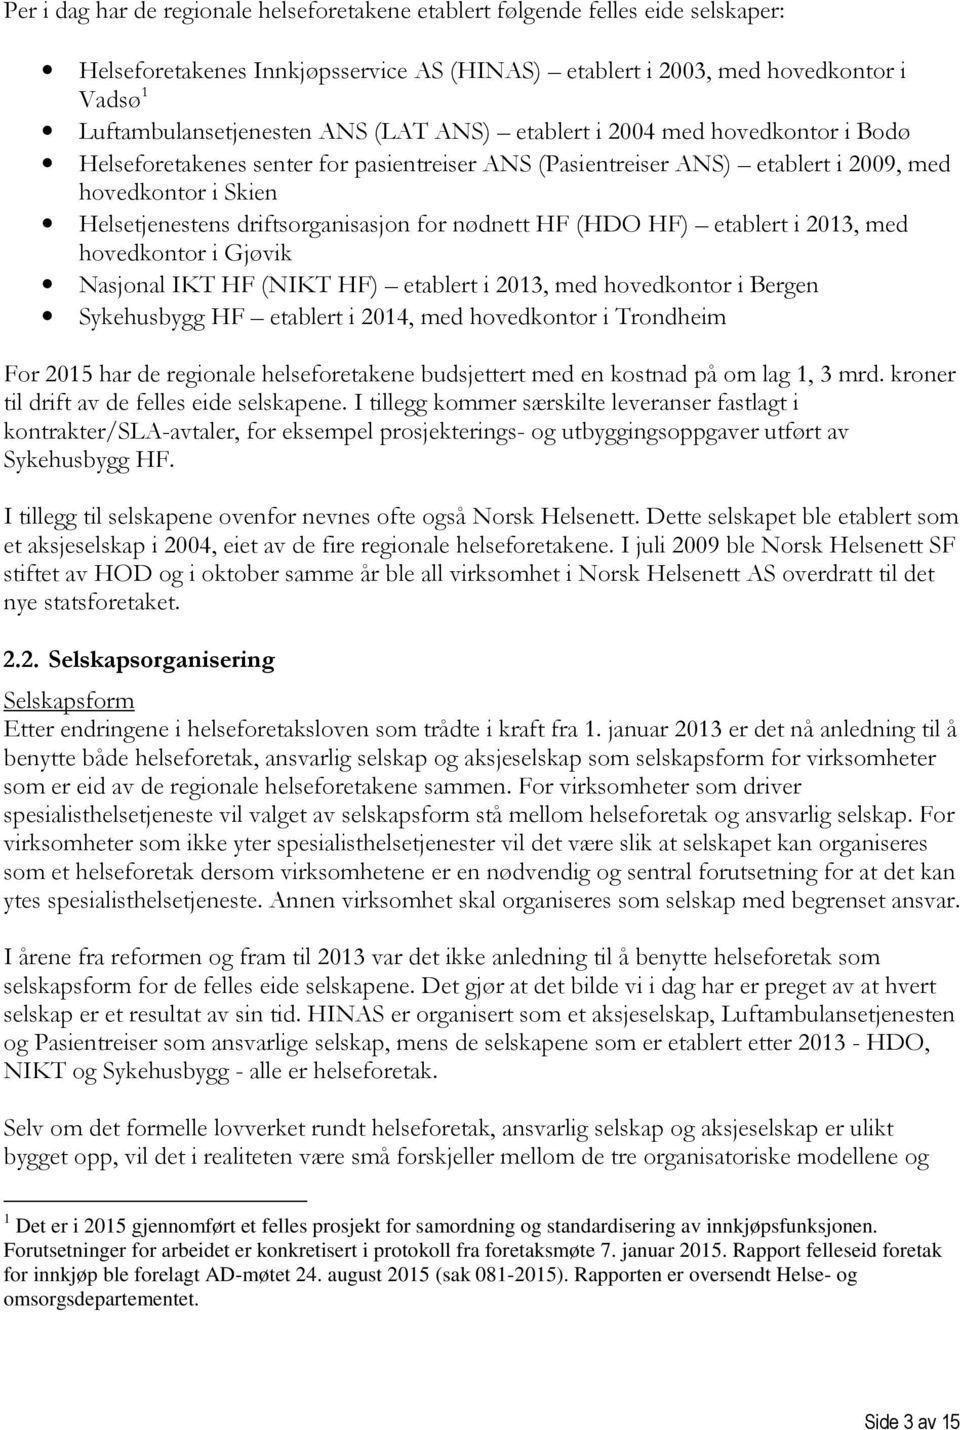 nødnett HF (HDO HF) etablert i 2013, med hovedkontor i Gjøvik Nasjonal IKT HF (NIKT HF) etablert i 2013, med hovedkontor i Bergen Sykehusbygg HF etablert i 2014, med hovedkontor i Trondheim For 2015